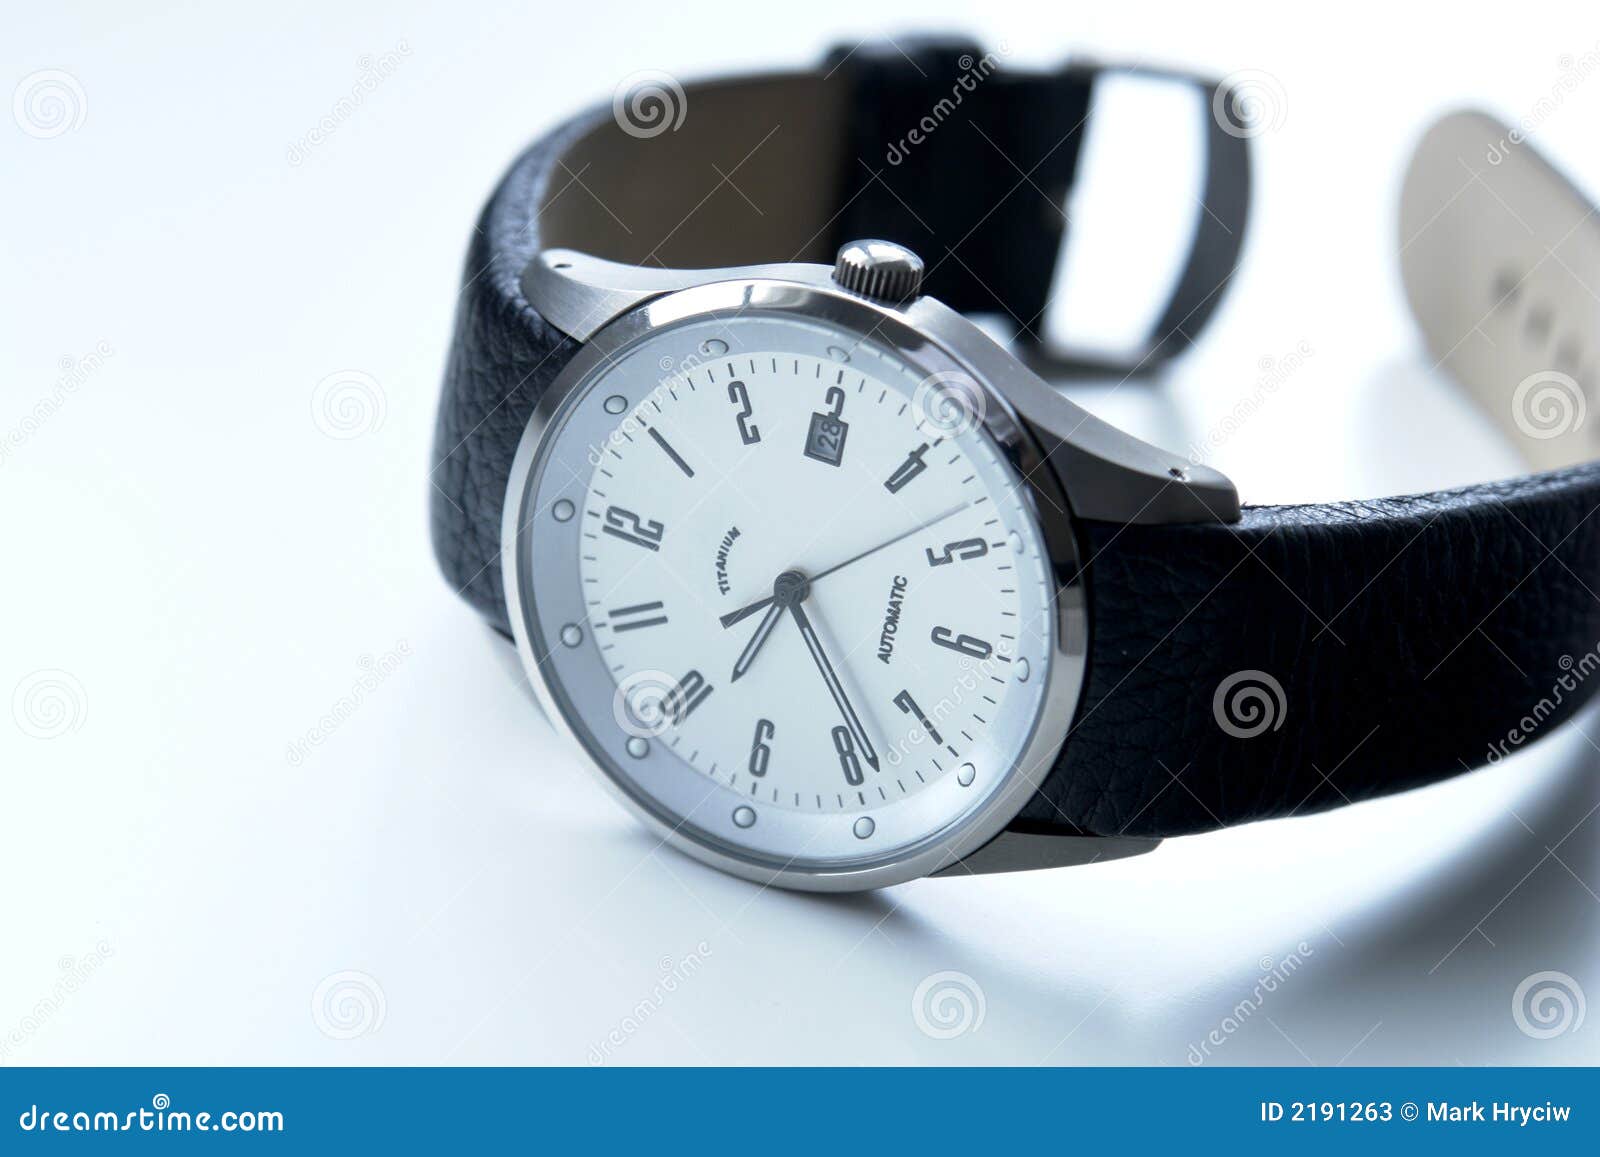 men's titanium watch